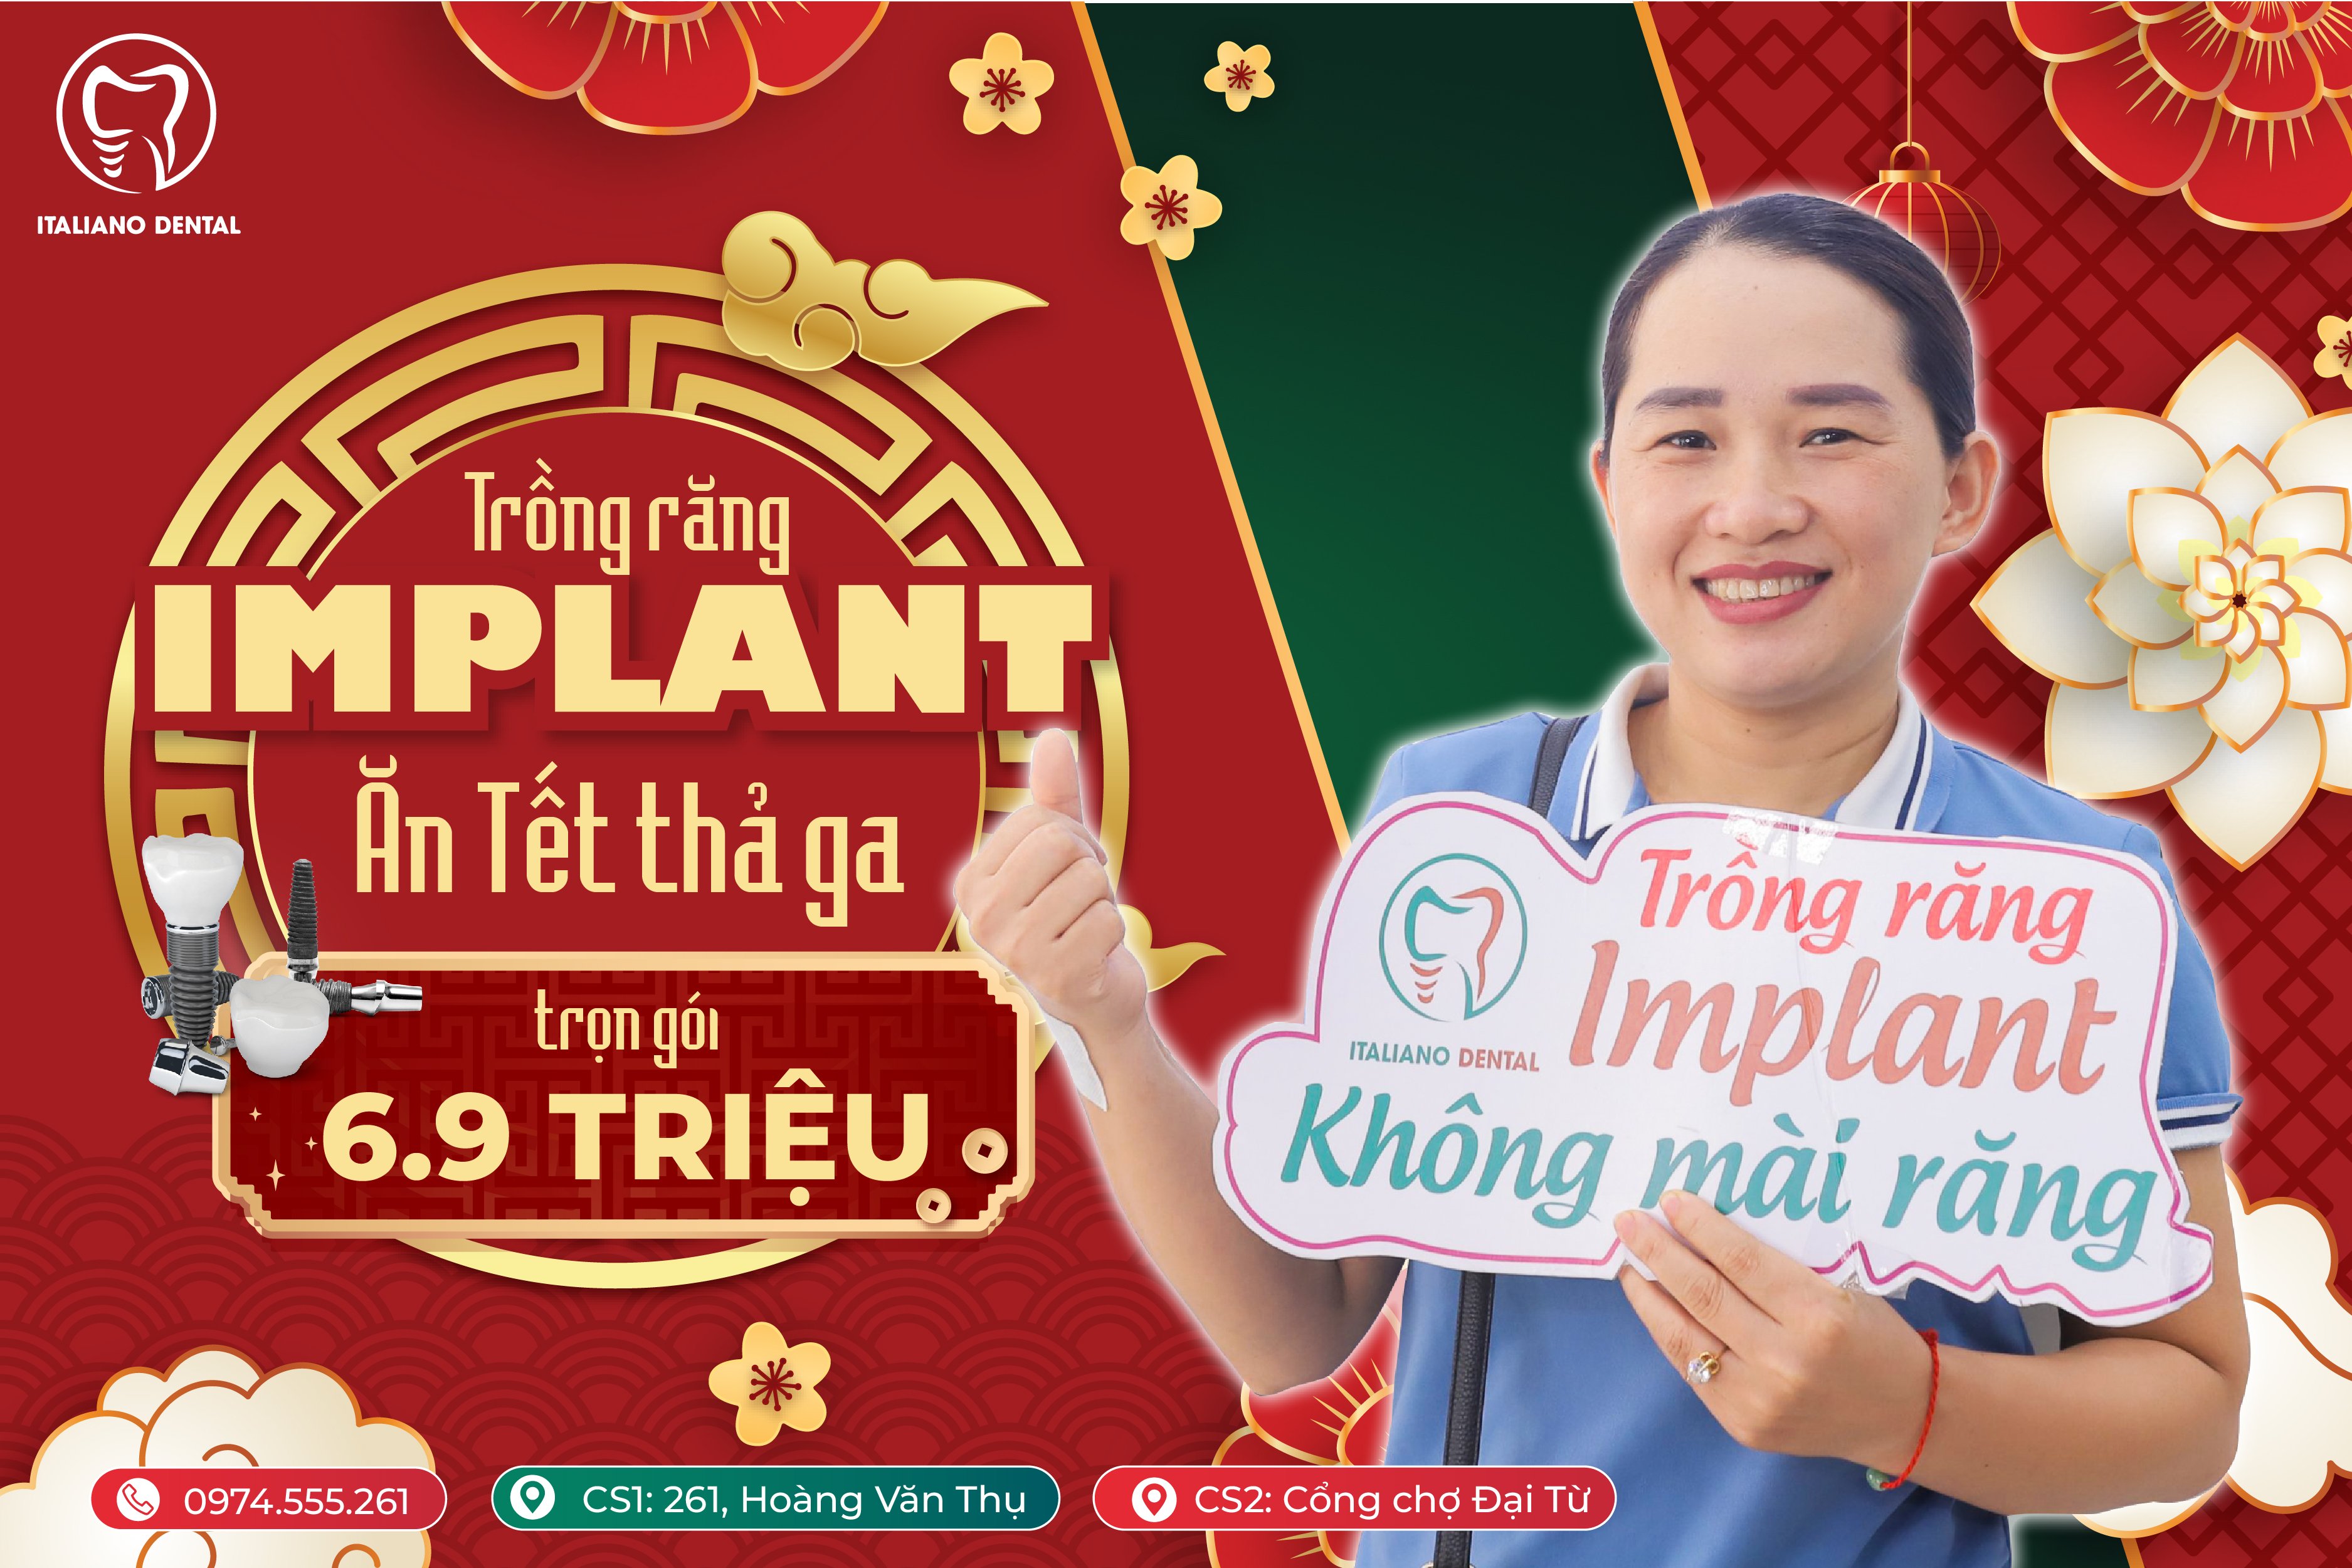 Trồng răng implant Thái Nguyên bao nhiêu tiền?